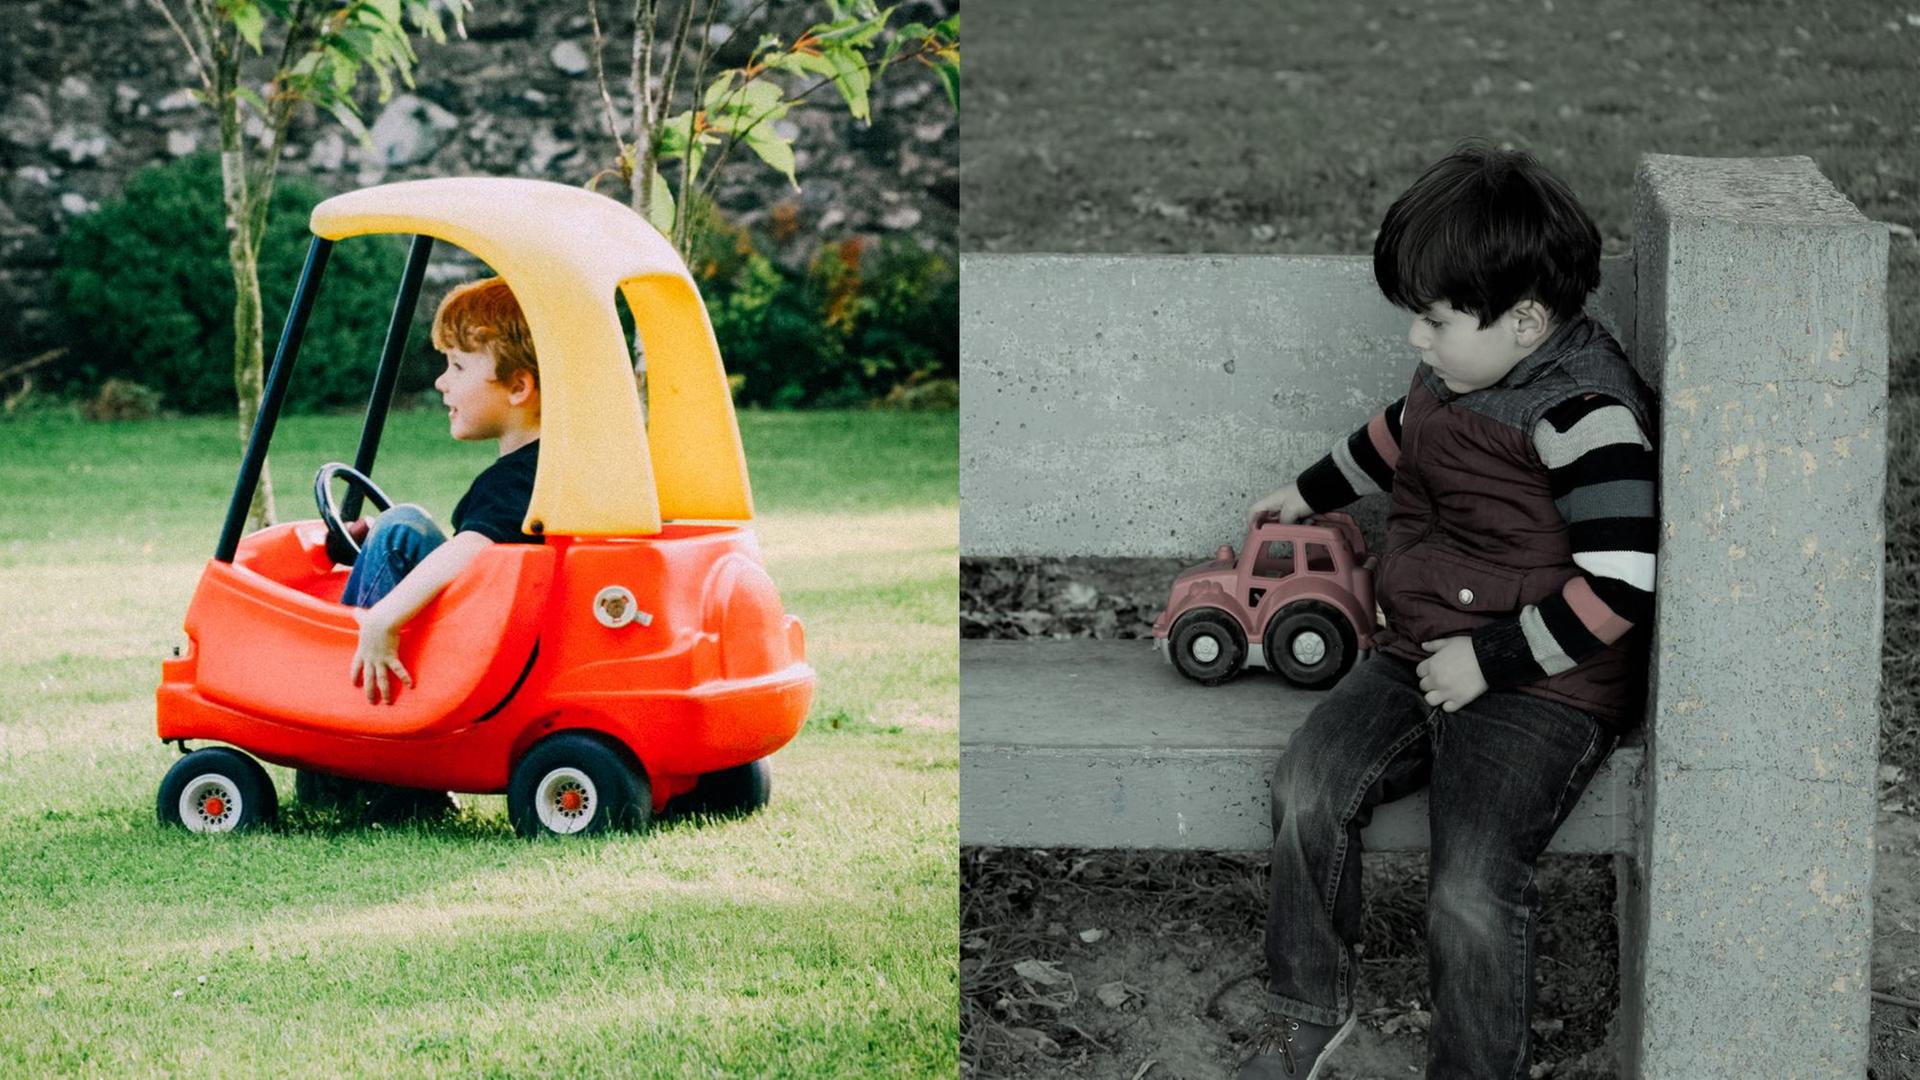 Ein kleiner Junge in einem großen Spielzeugauto in einem Garten. Daneben ein anderer kleiner Junge mit einem kleinen Spielzeugauto auf einer Betonbank.